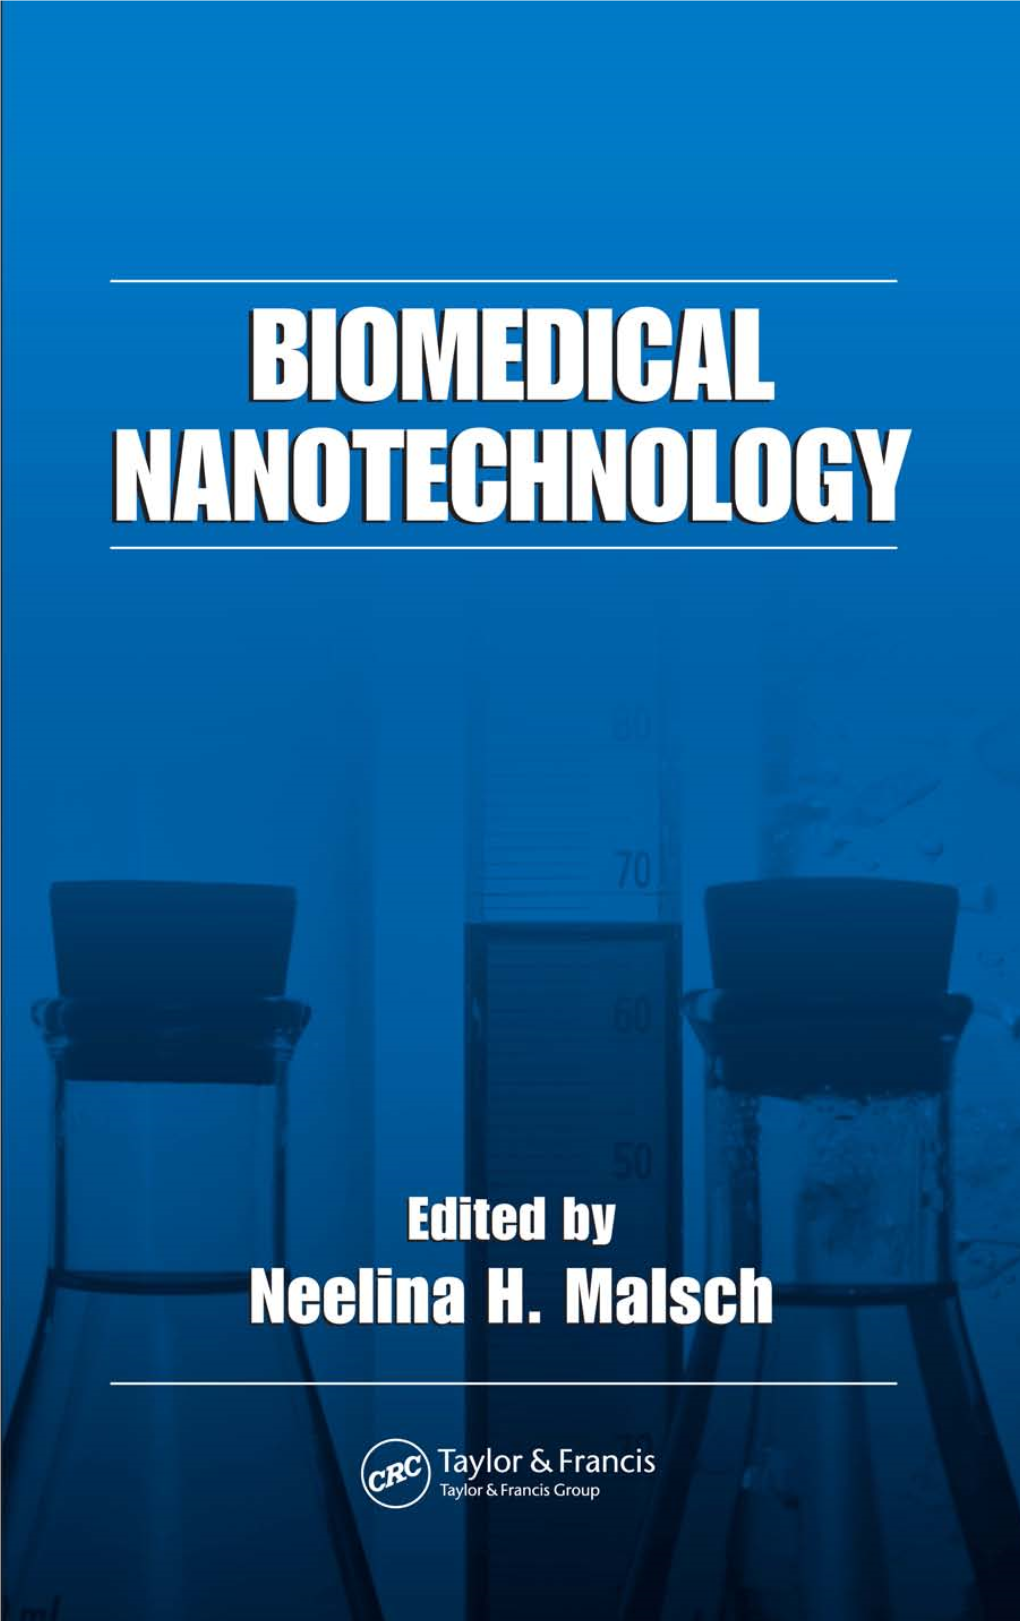 Biomedical Nanotechnology.Pdf